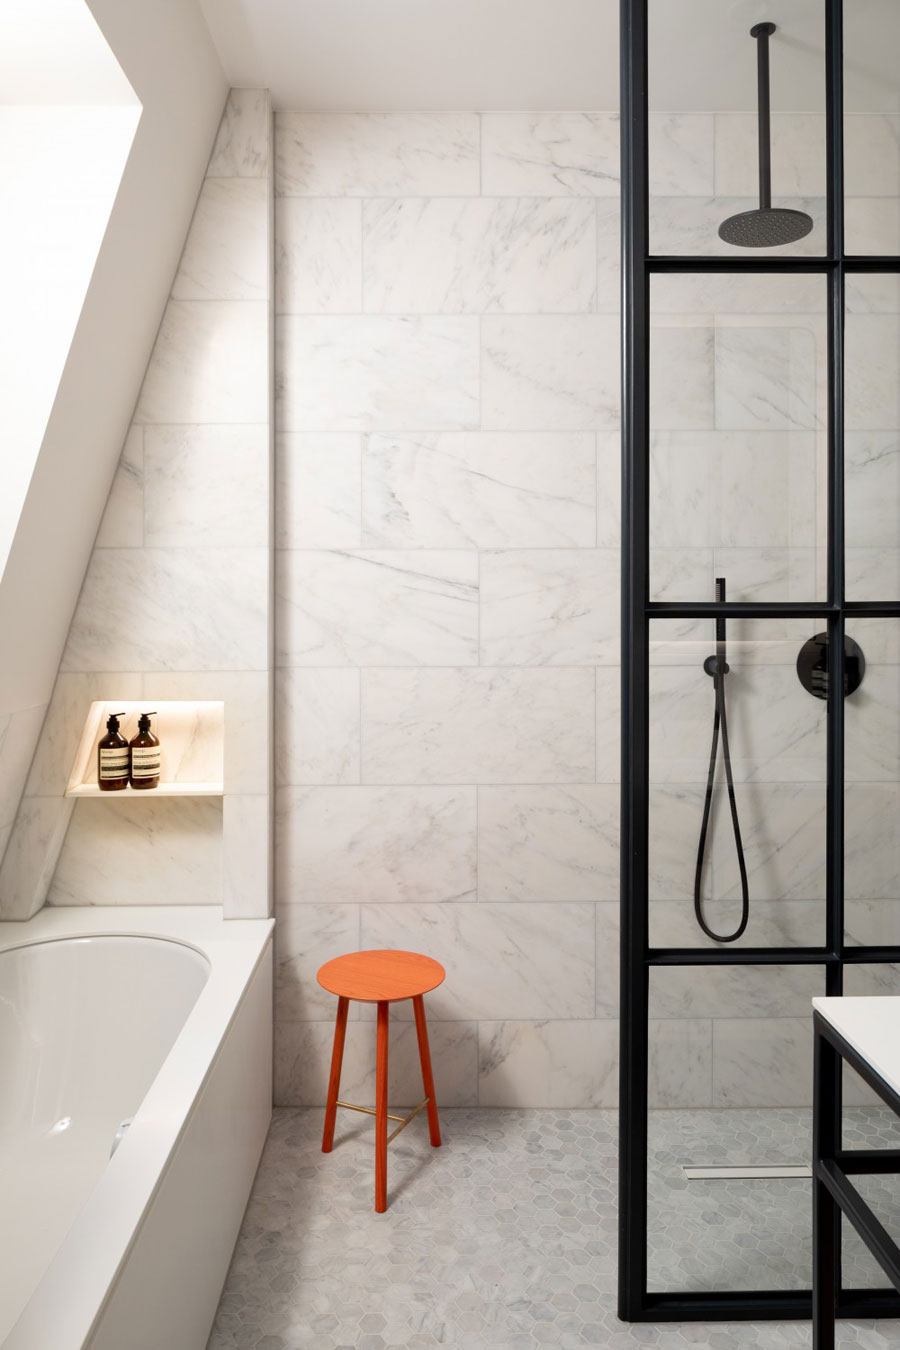 Hout, staal en marmer vormen in deze badkamer een mooie combinatie!